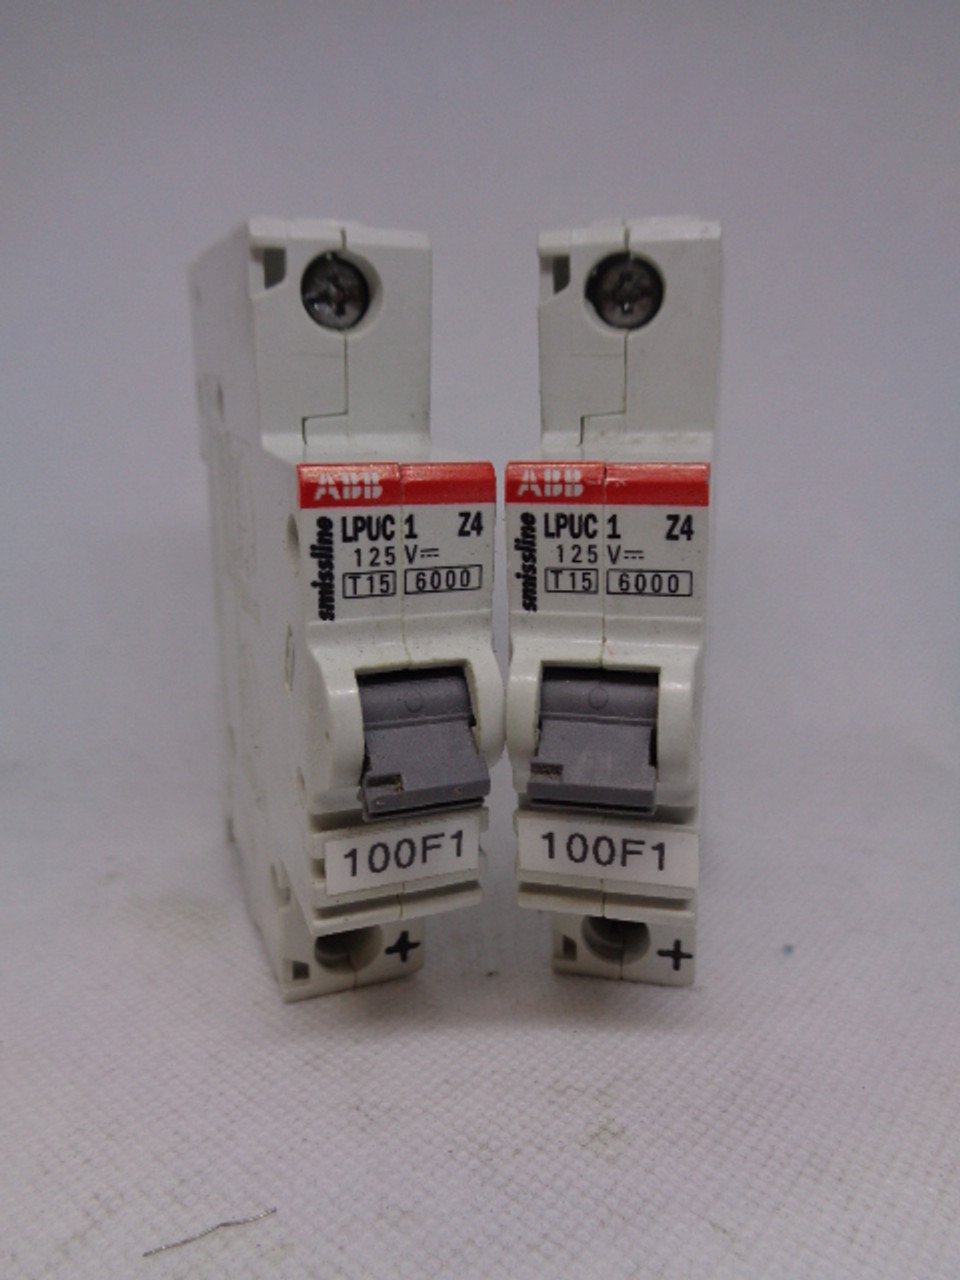 (2) ABB Smissline LPUC1 Z4 Type SDH/SDS Circuit Breakers, 125V (T15) (6000)